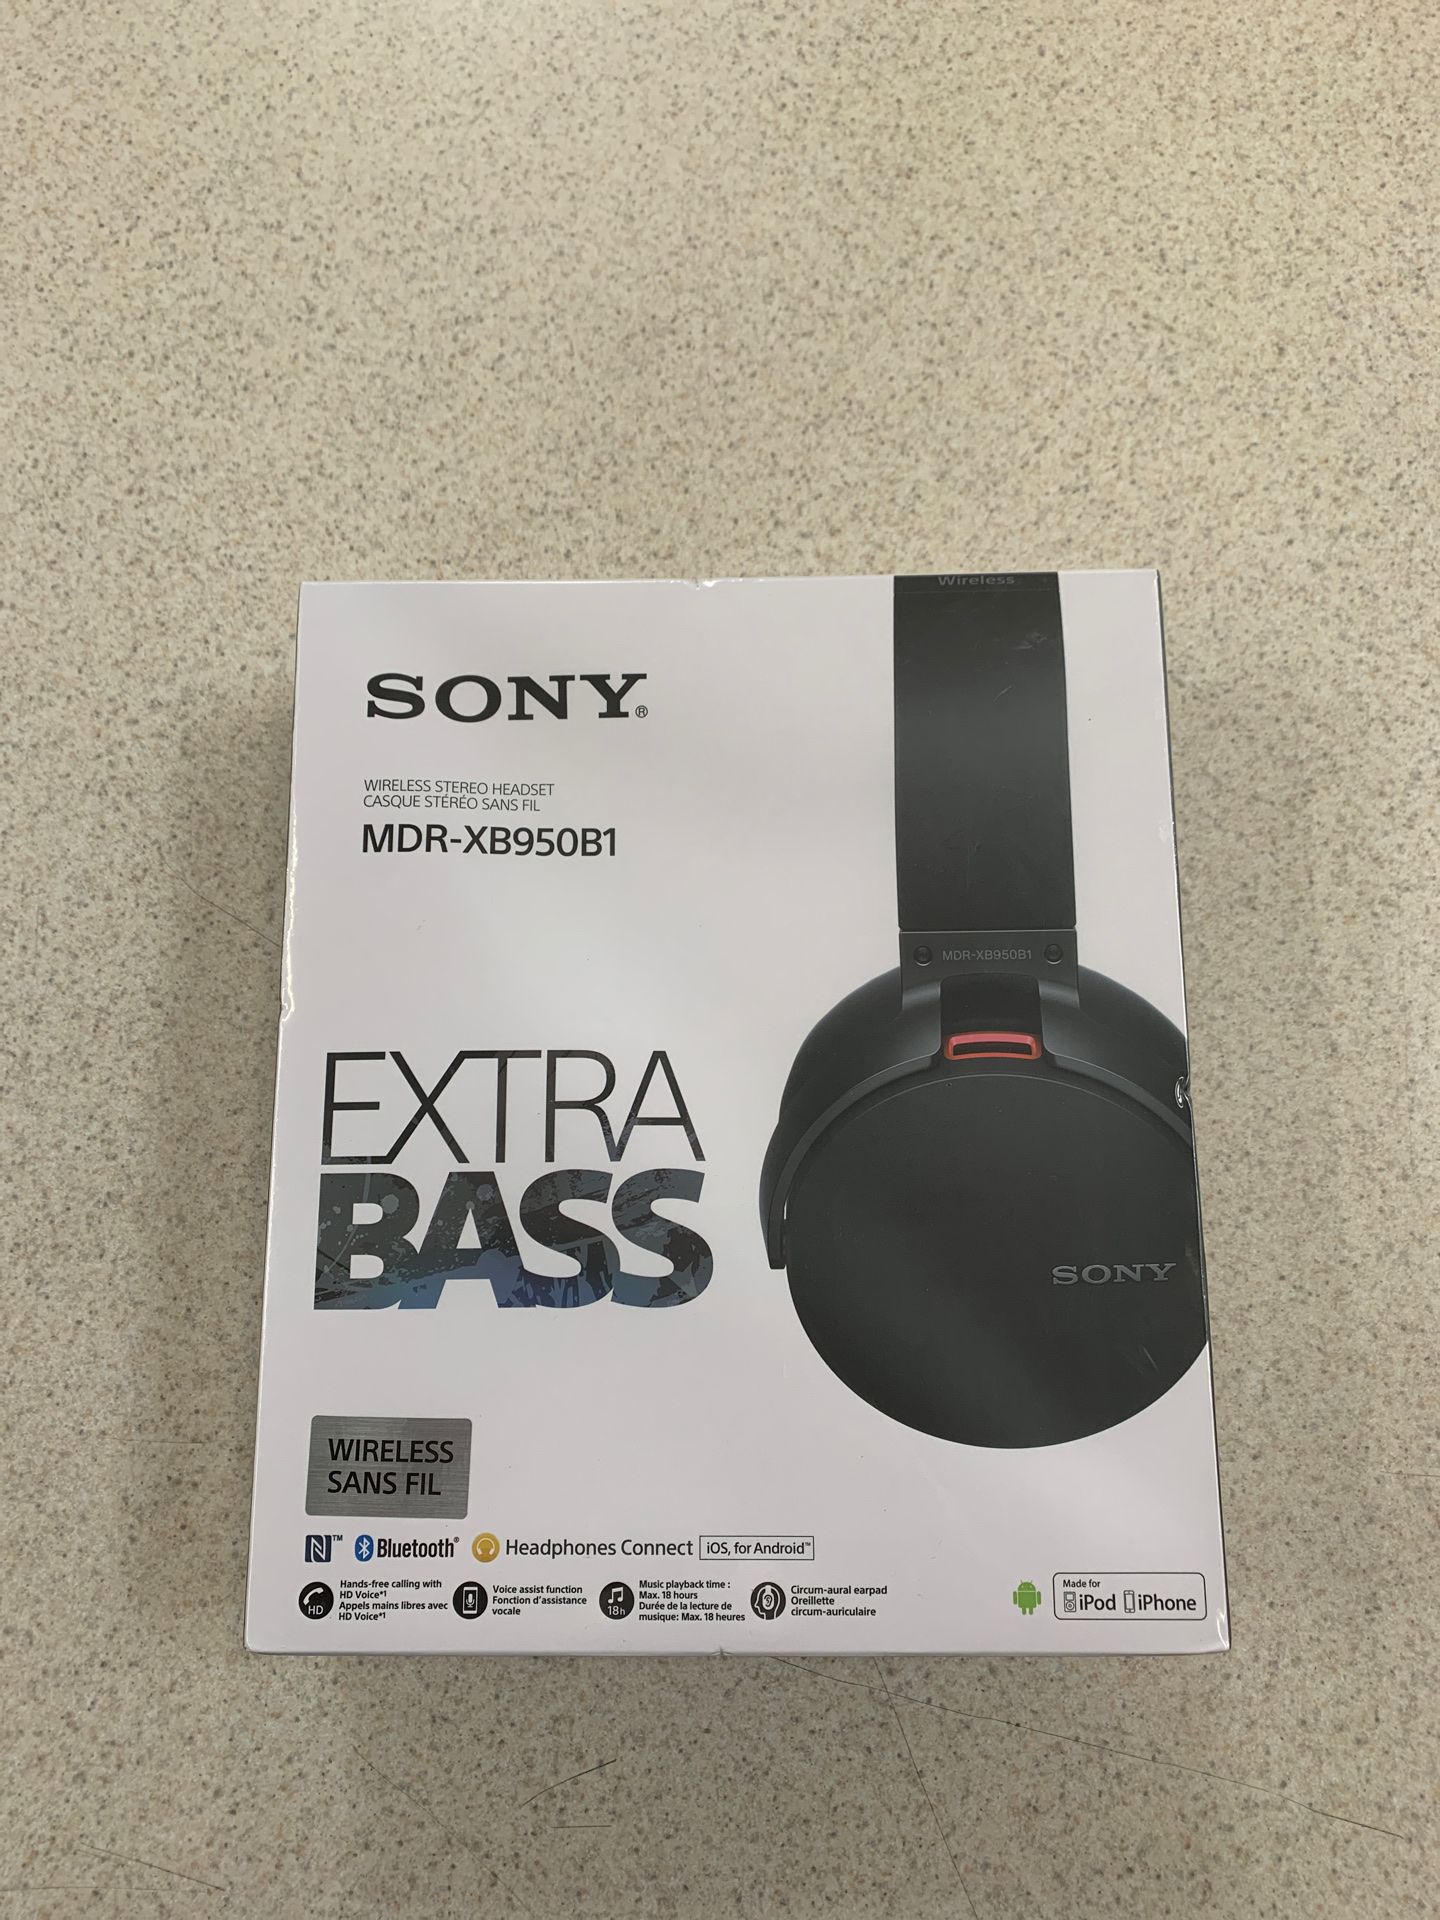 Sony xb950b1 headphones